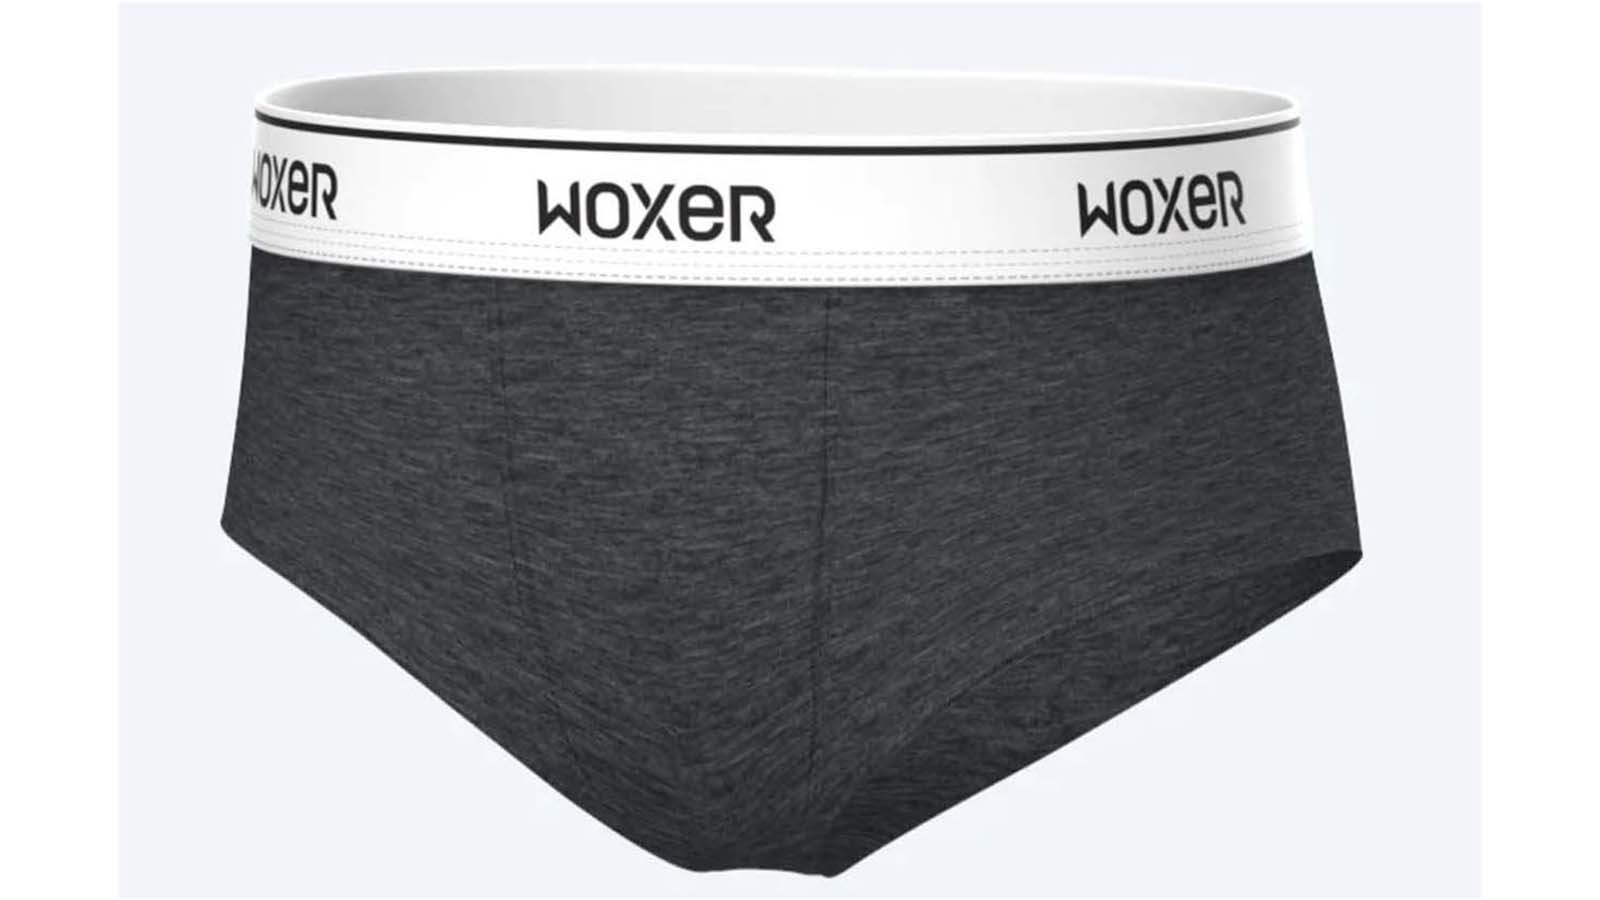 Woxer underwear review